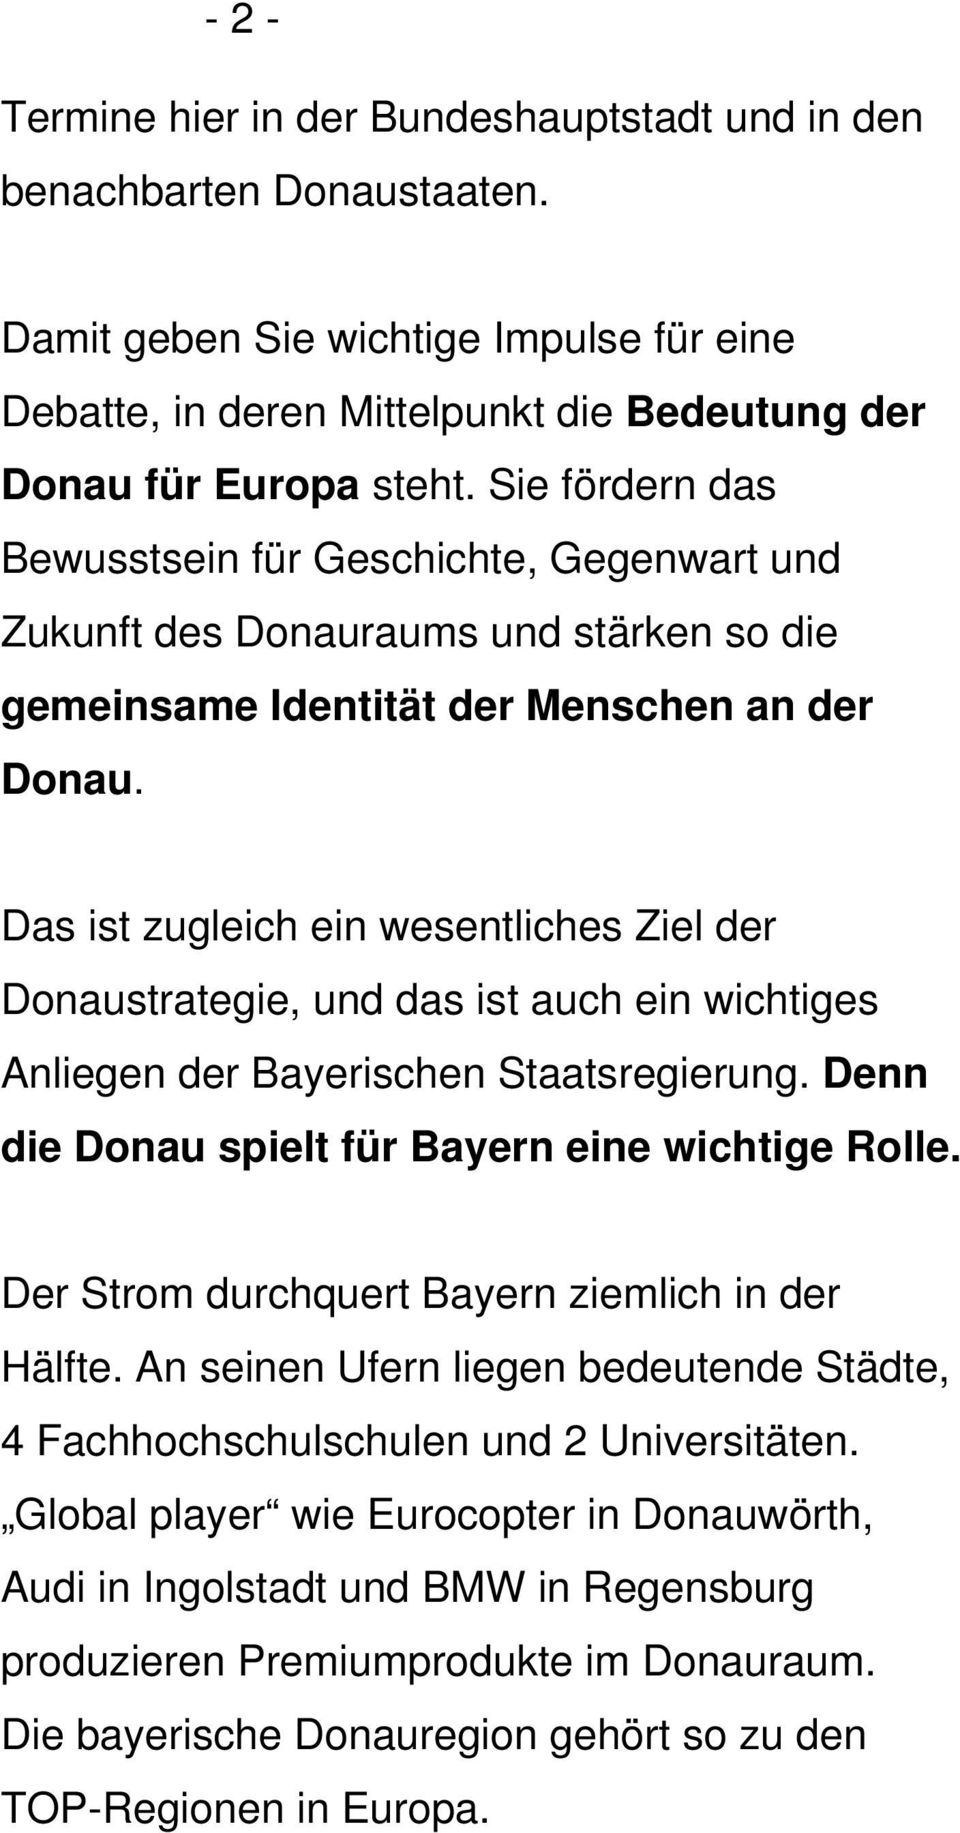 Das ist zugleich ein wesentliches Ziel der Donaustrategie, und das ist auch ein wichtiges Anliegen der Bayerischen Staatsregierung. Denn die Donau spielt für Bayern eine wichtige Rolle.